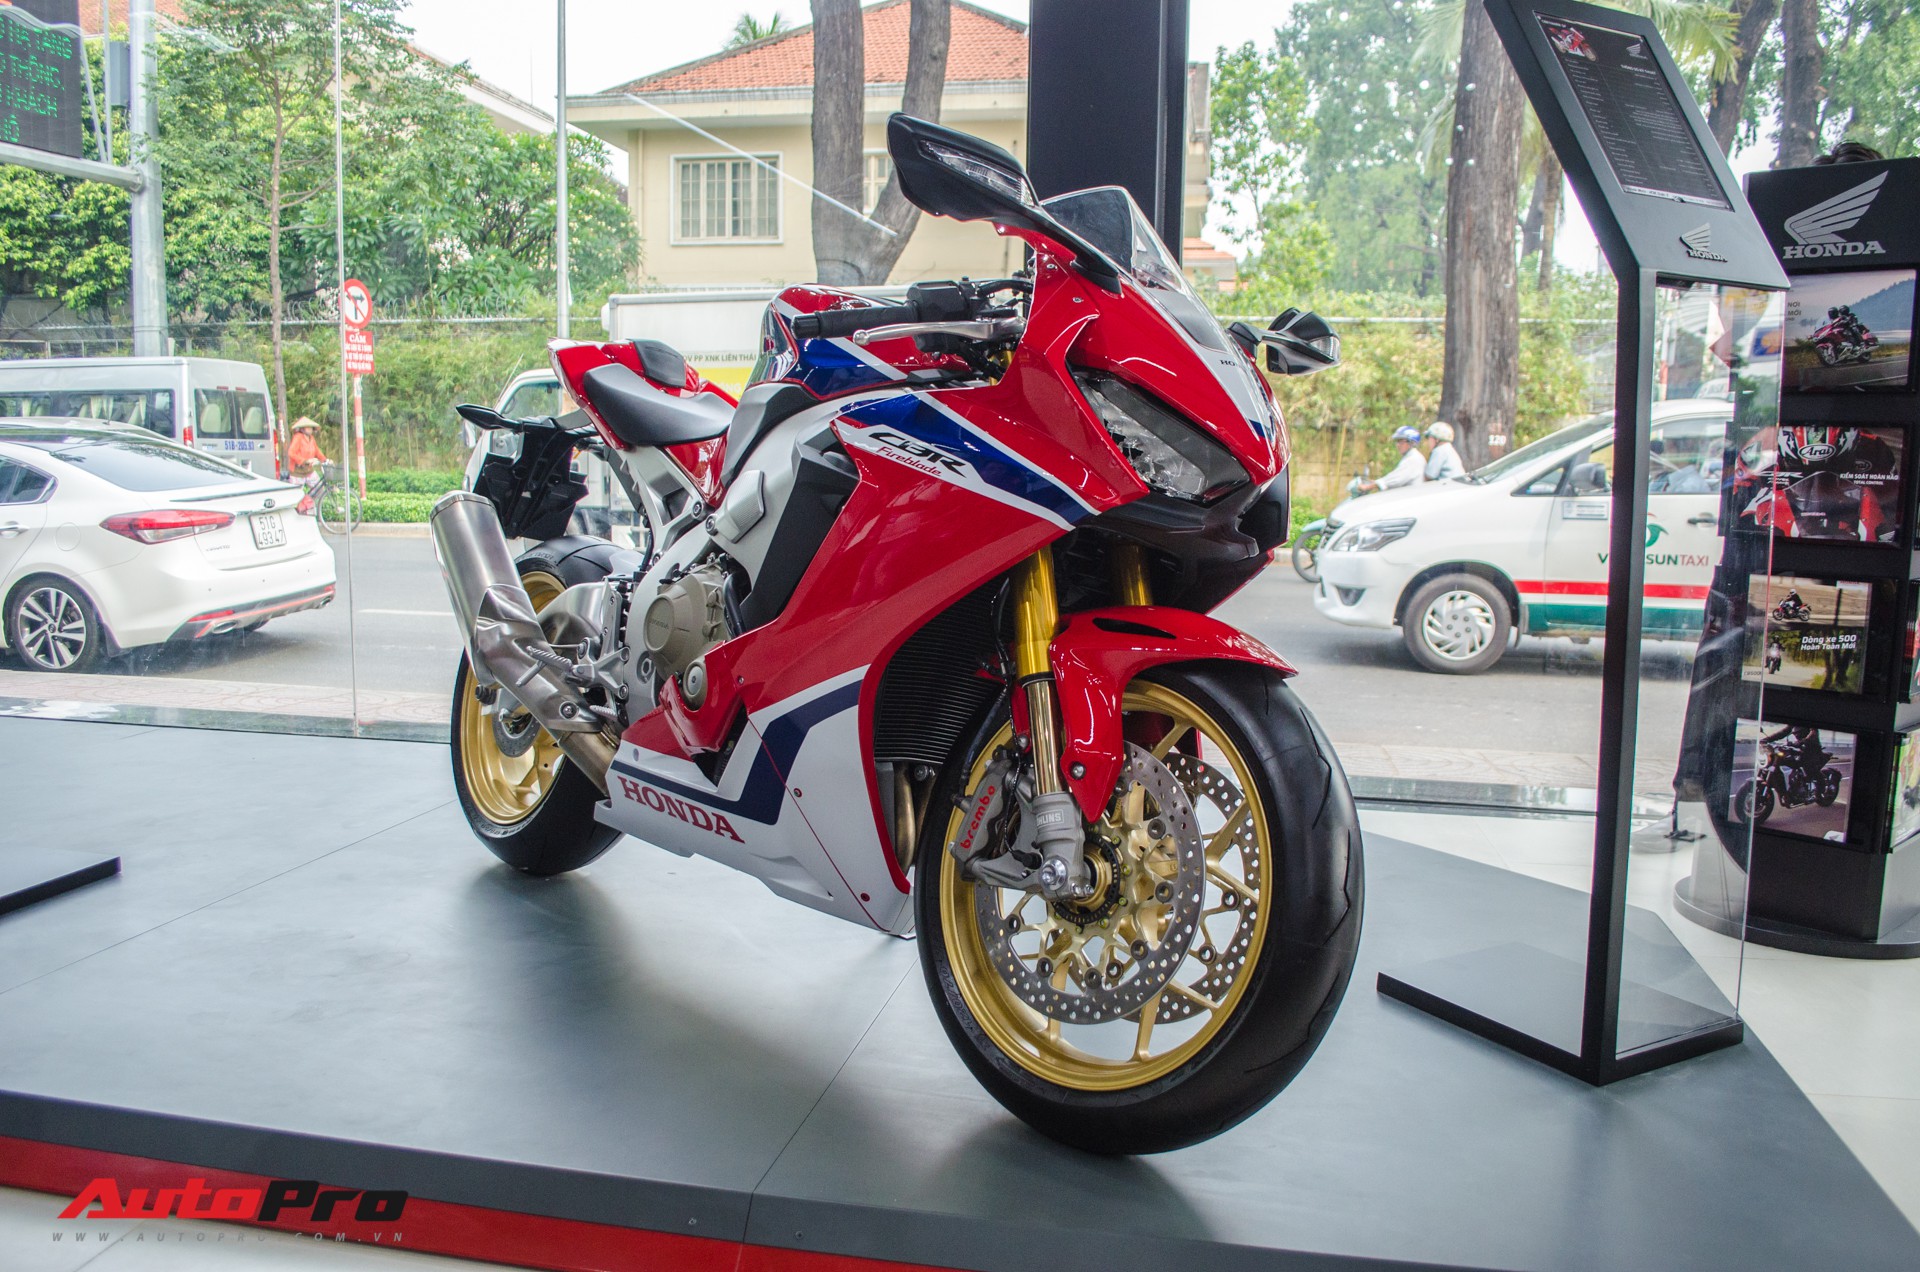 Honda khai trương đại lý, mở bán hàng loạt mô tô phân khối lớn tại Việt Nam